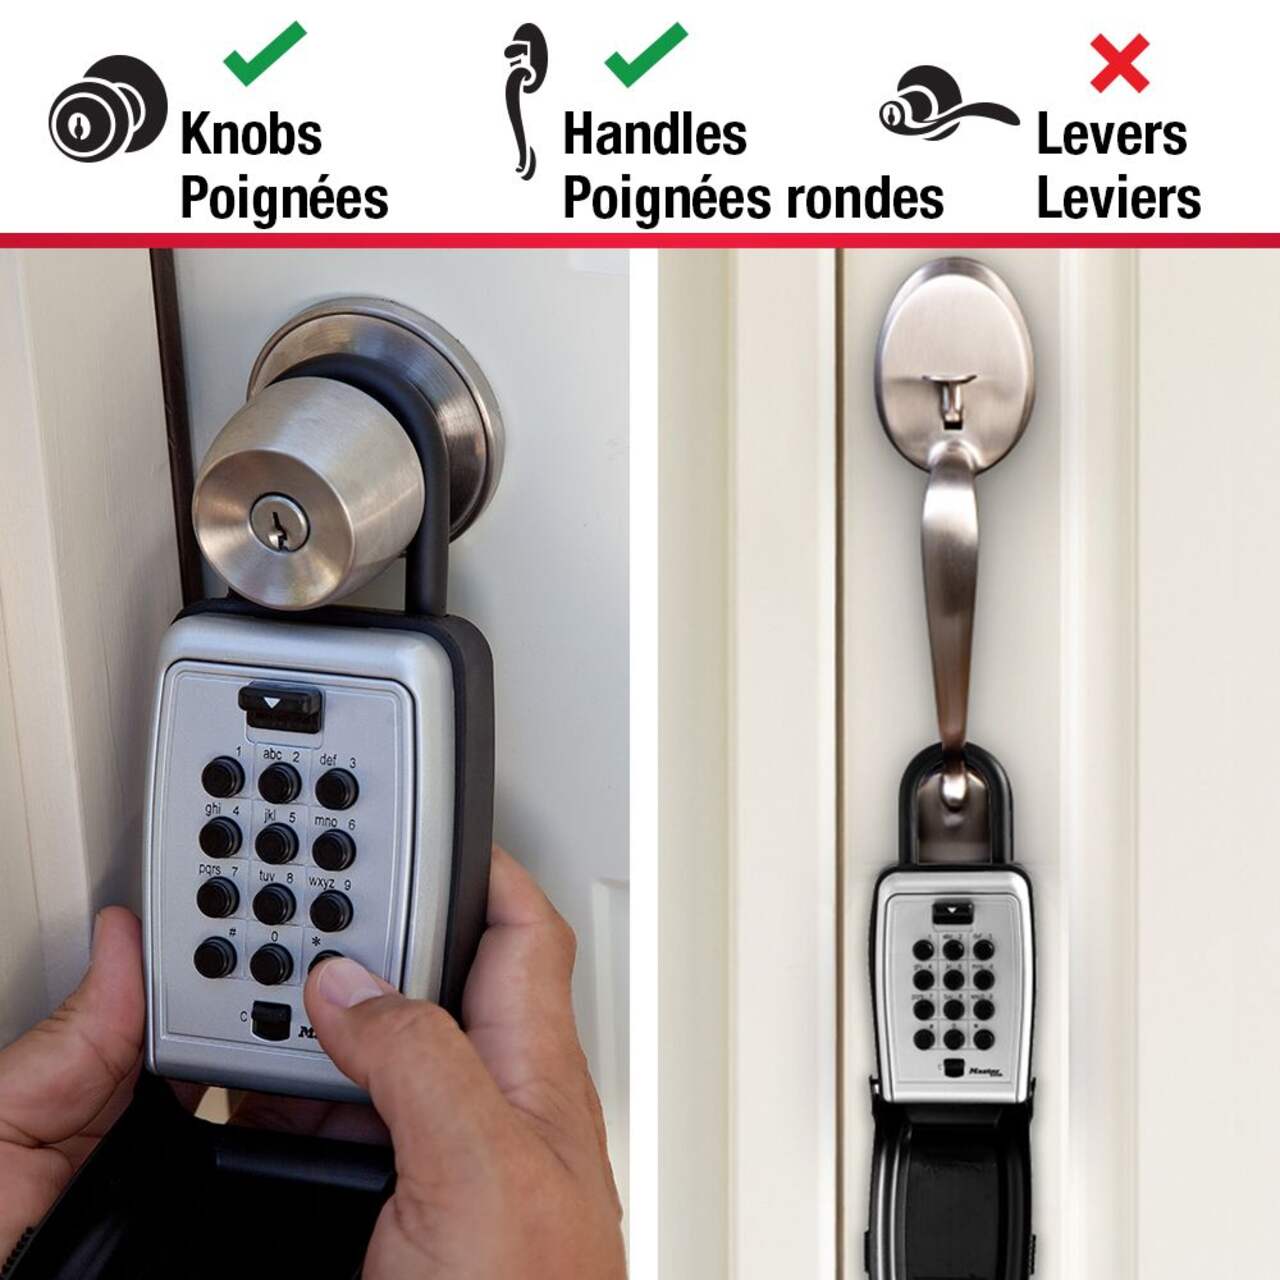 Coffret portatif cadenas à boutons-pressoir pour clés avec combinaison  réinitialisable large Master Lock, 79 mm, argent/noir